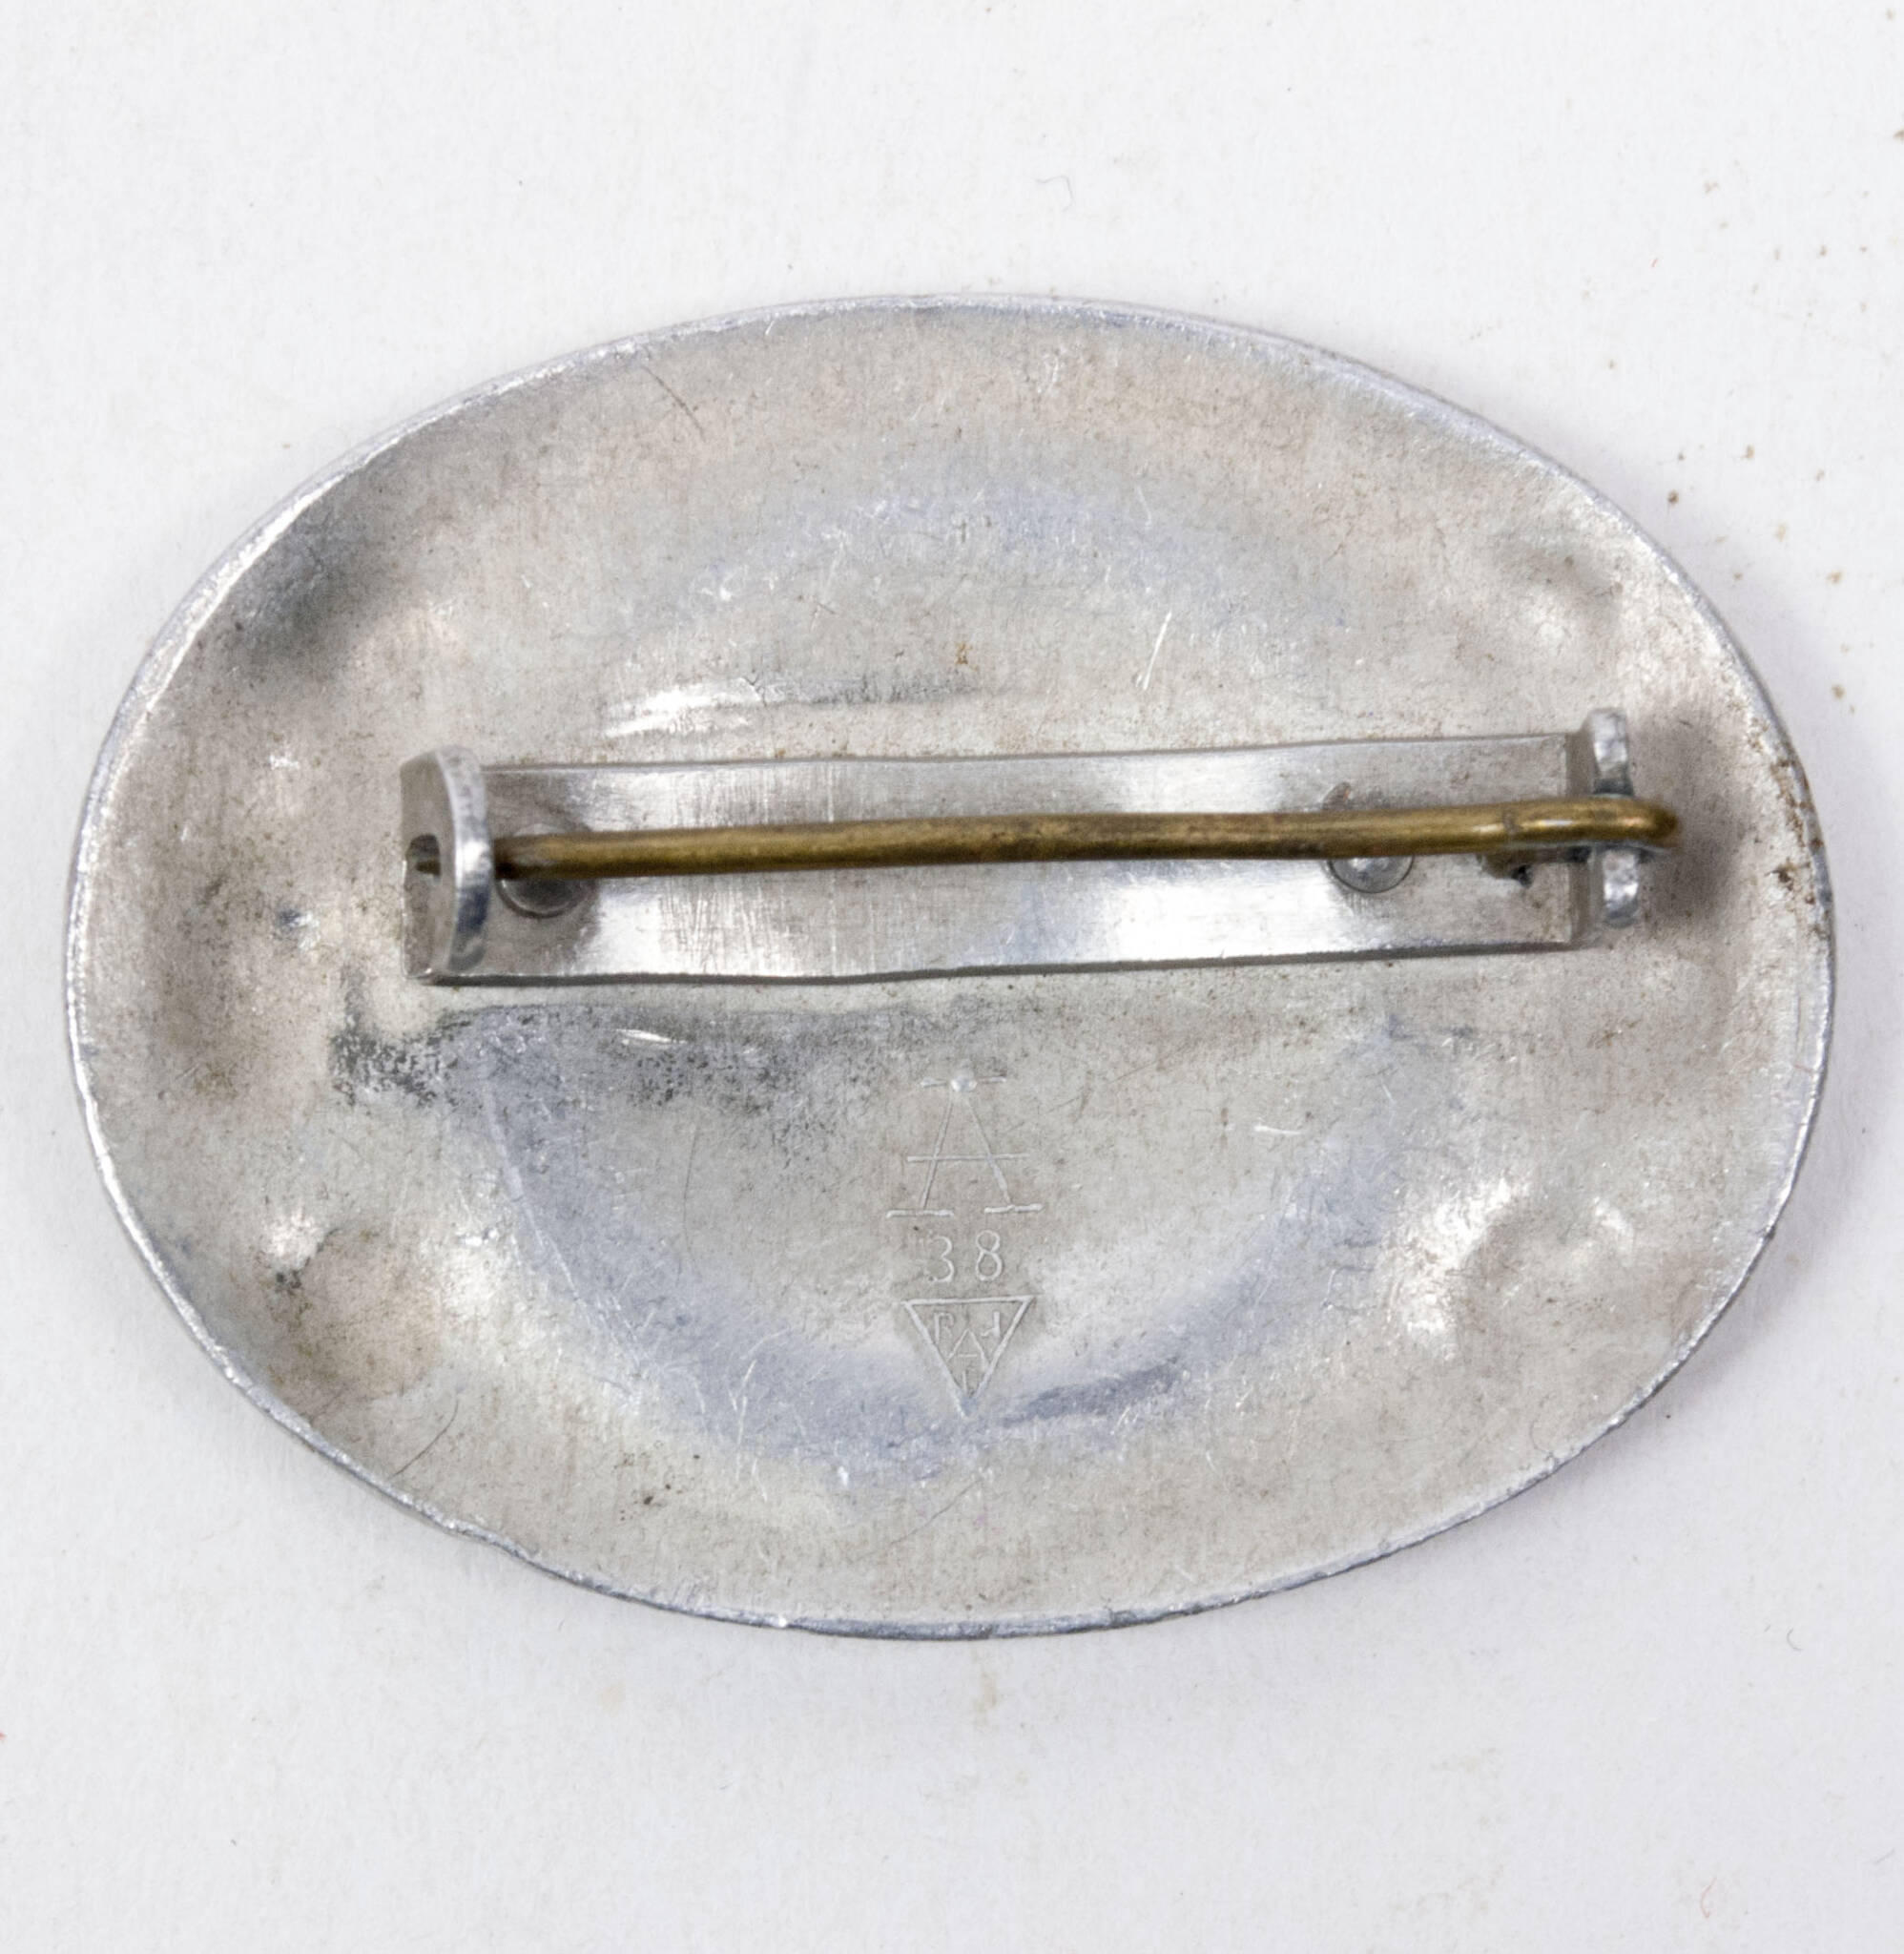 Reichsarbeitsdienst (RADw) female brooch (maker Assmann)